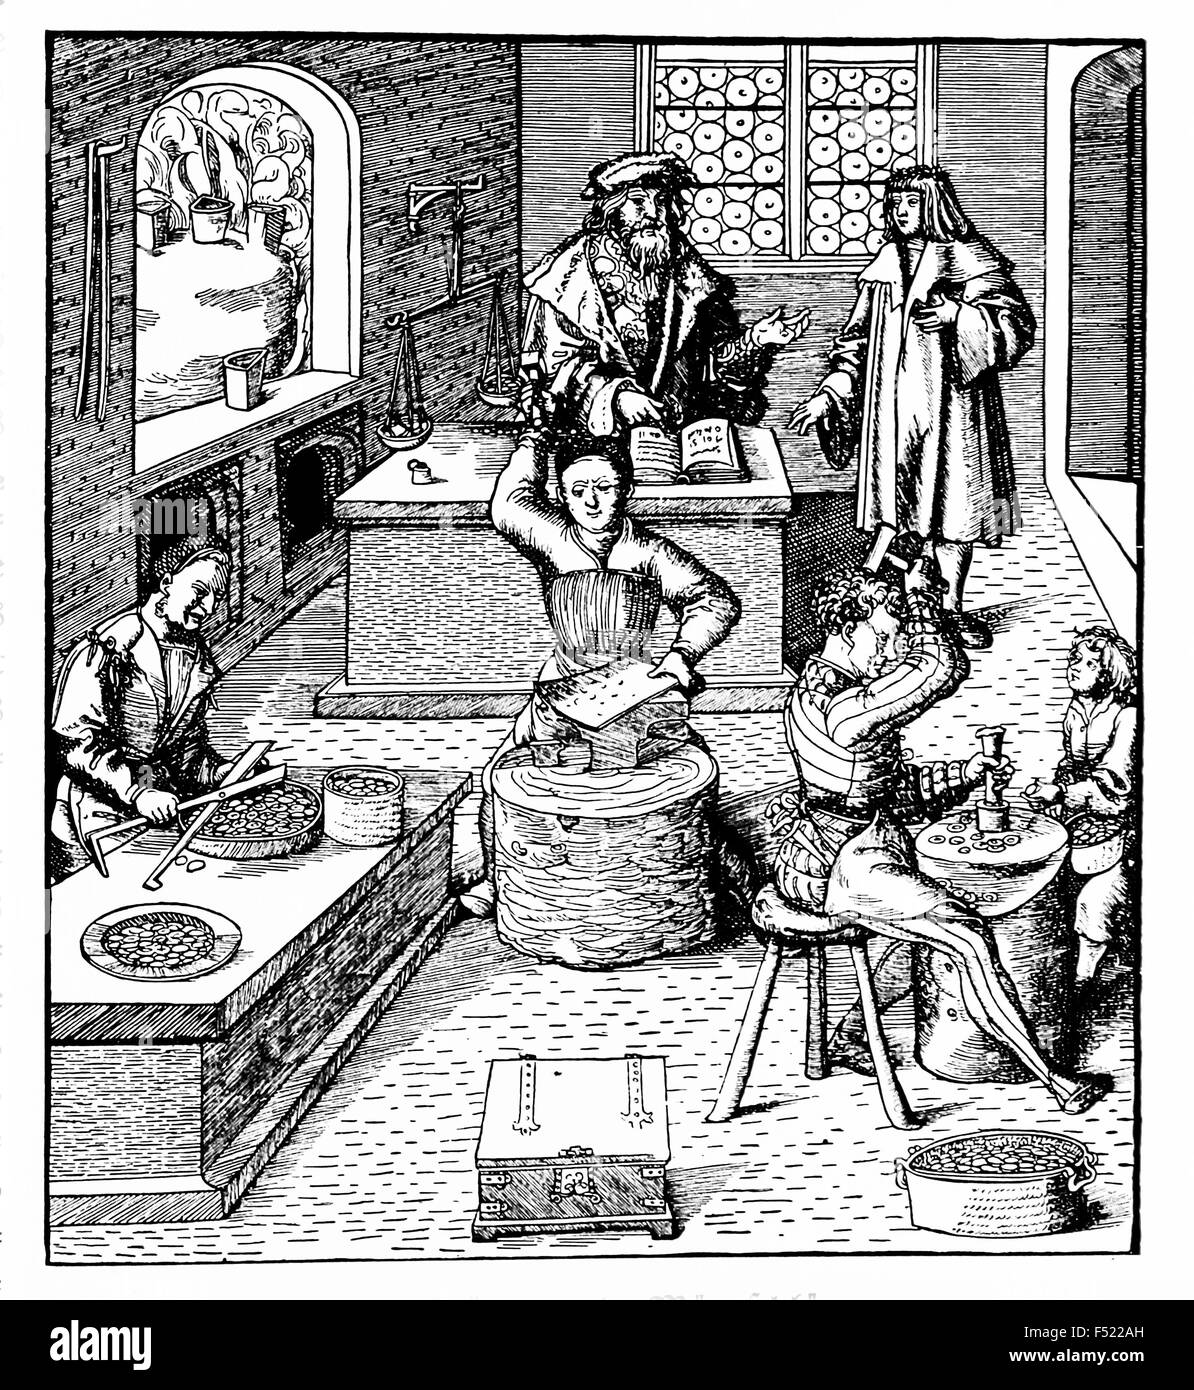 Jahrgang, Gravur, Darstellung der Arbeit zu machen Münzen in einem Mittelalter-workshop Stockfoto